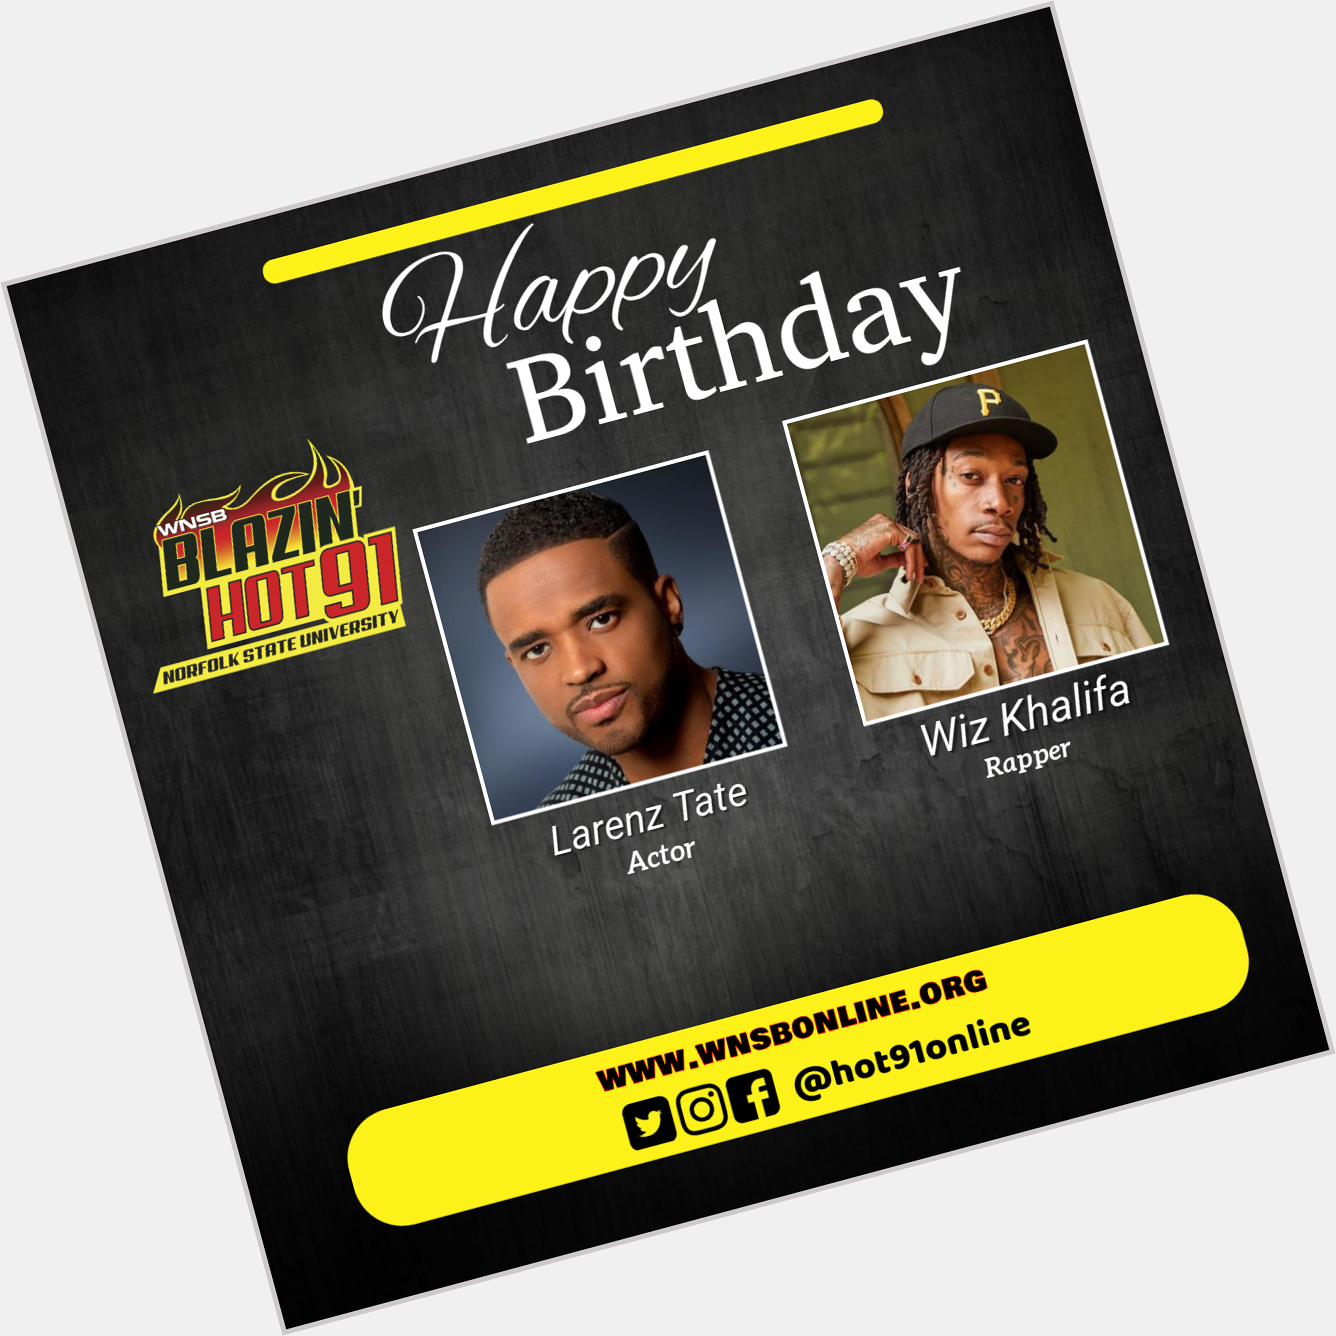 Happy Blazin\ Hot birthday to Larenz Tate & Wiz Khalifa    